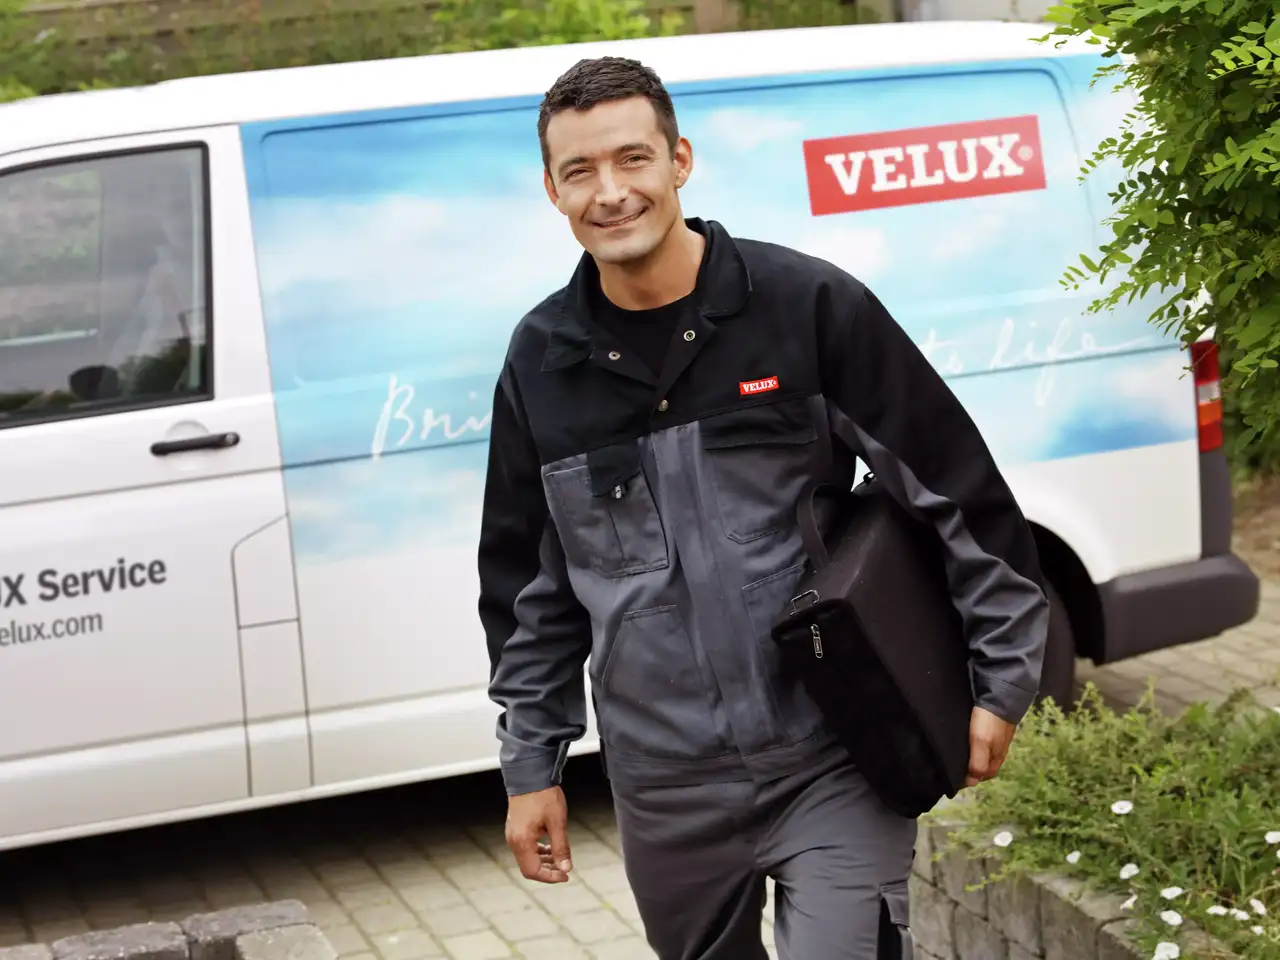 VELUX-Servicetechniker nähert sich einem markierten Firmenfahrzeug für Dachflächenfenster-Dienstleistungen.